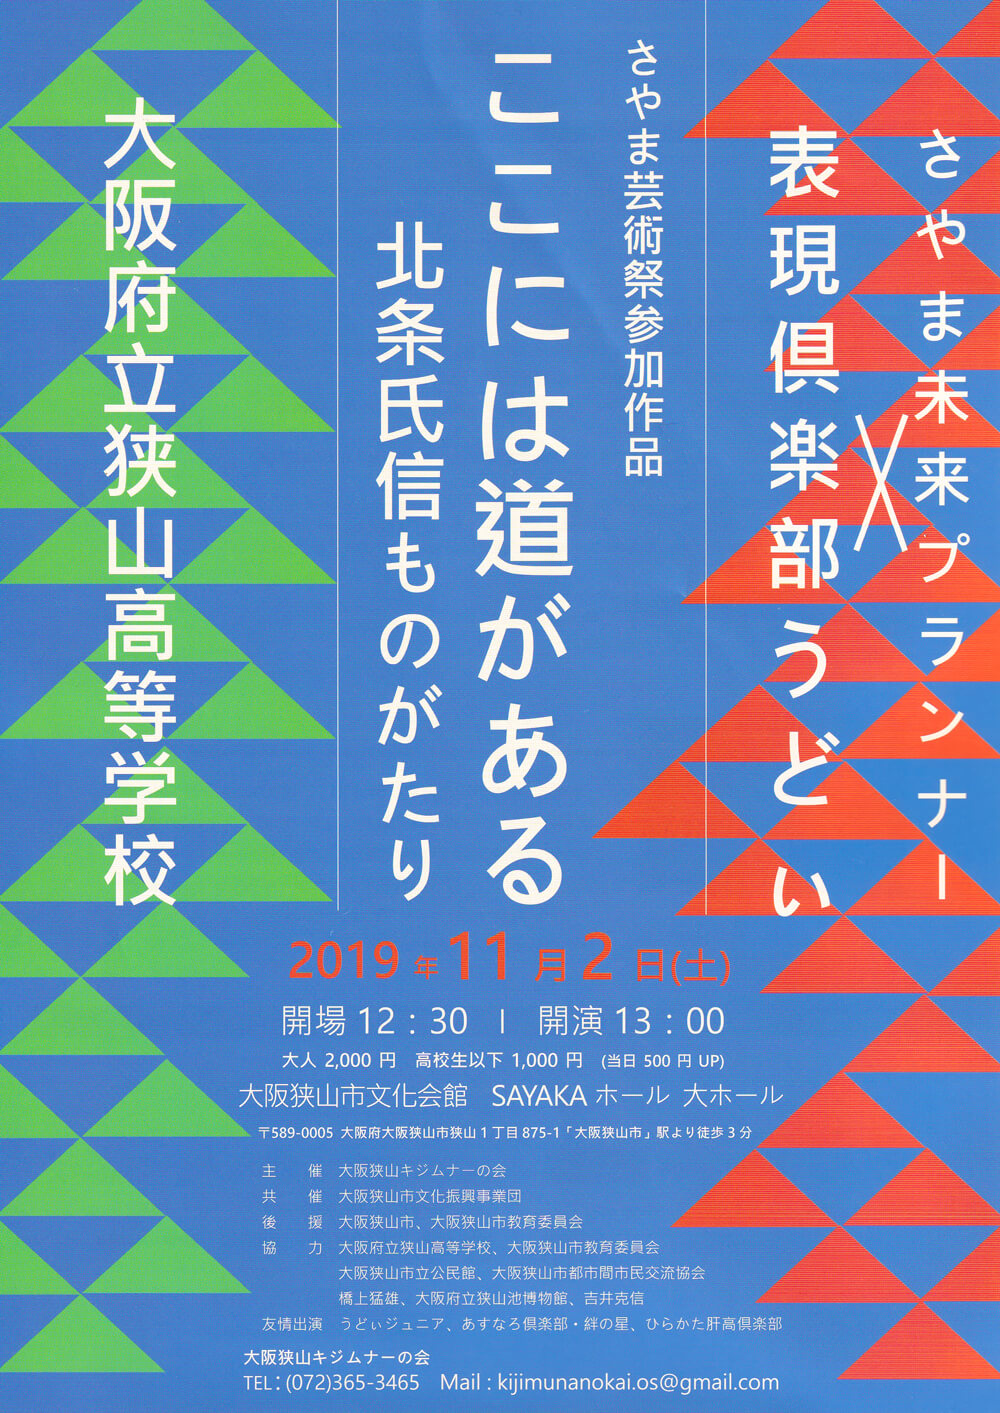 さやま芸術祭参加作品「ここには道がある 北条氏信ものがたり」が、SAYAKAホールにて2019年11月2日に公演